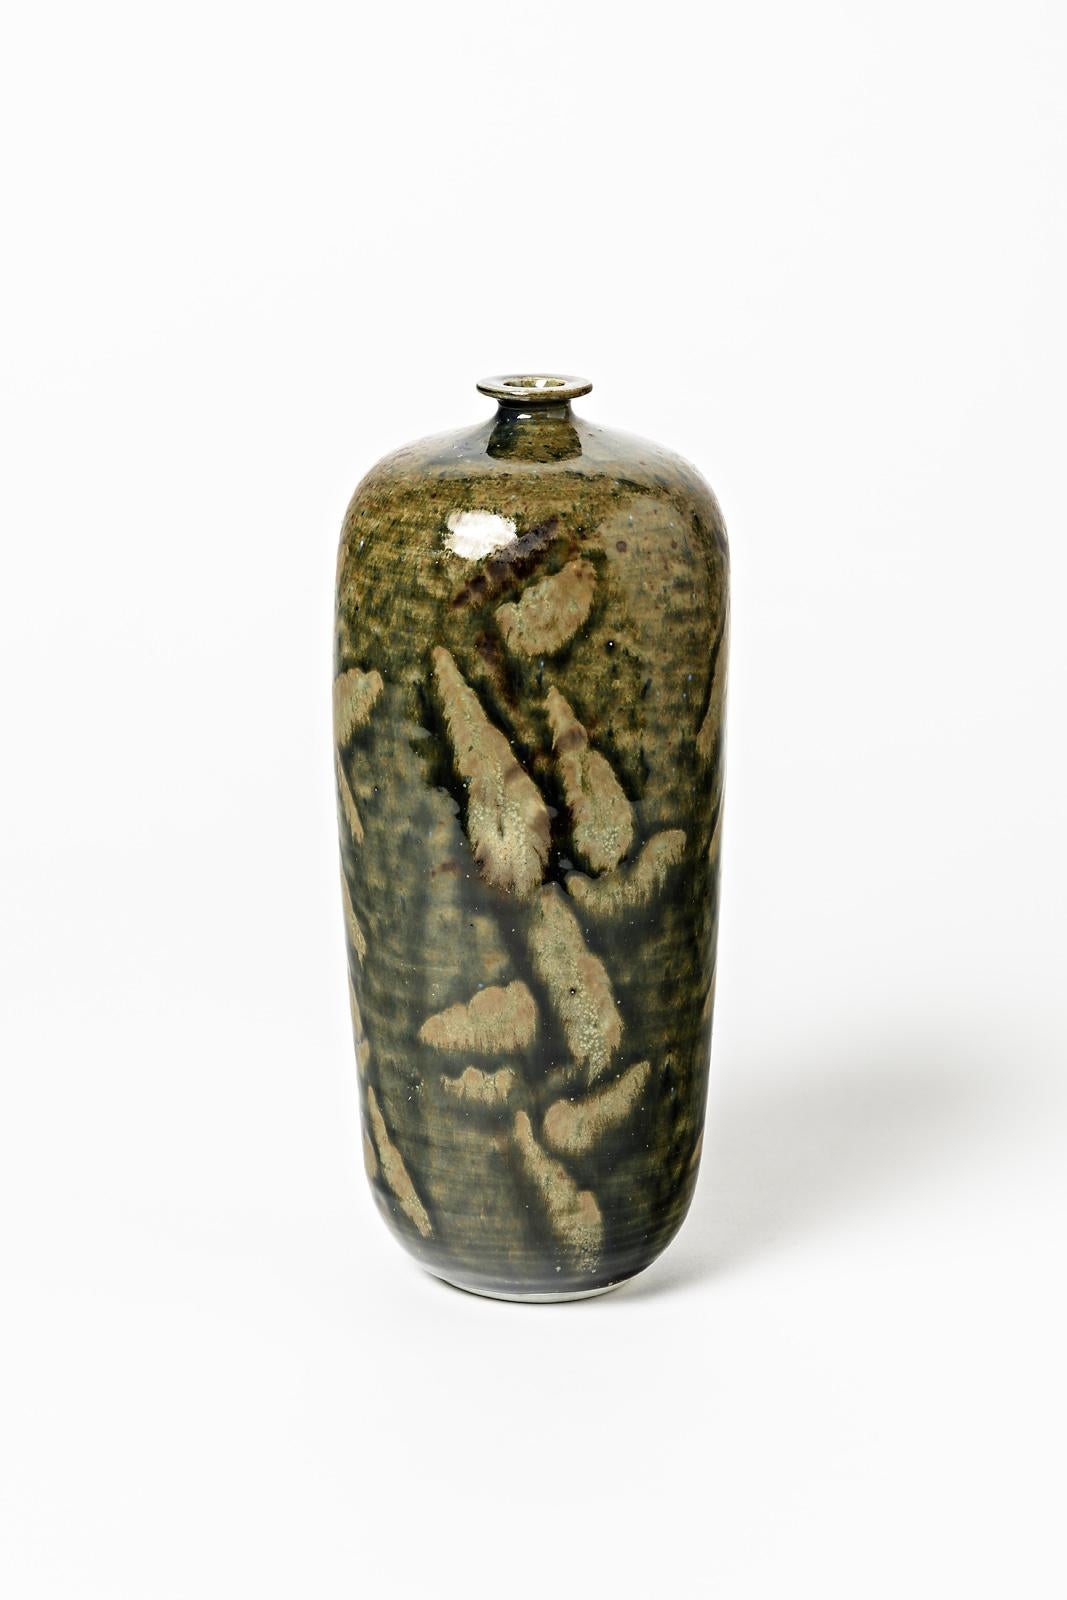 Robert Héraud et Annie Maume

Réalisé à La Borne vers 1970

Élégante bouteille en céramique de porcelaine avec des couleurs abstraites d'émaux de céramique bruns et verts.

Conditions originales parfaites

Signé sous la base

Mesures :